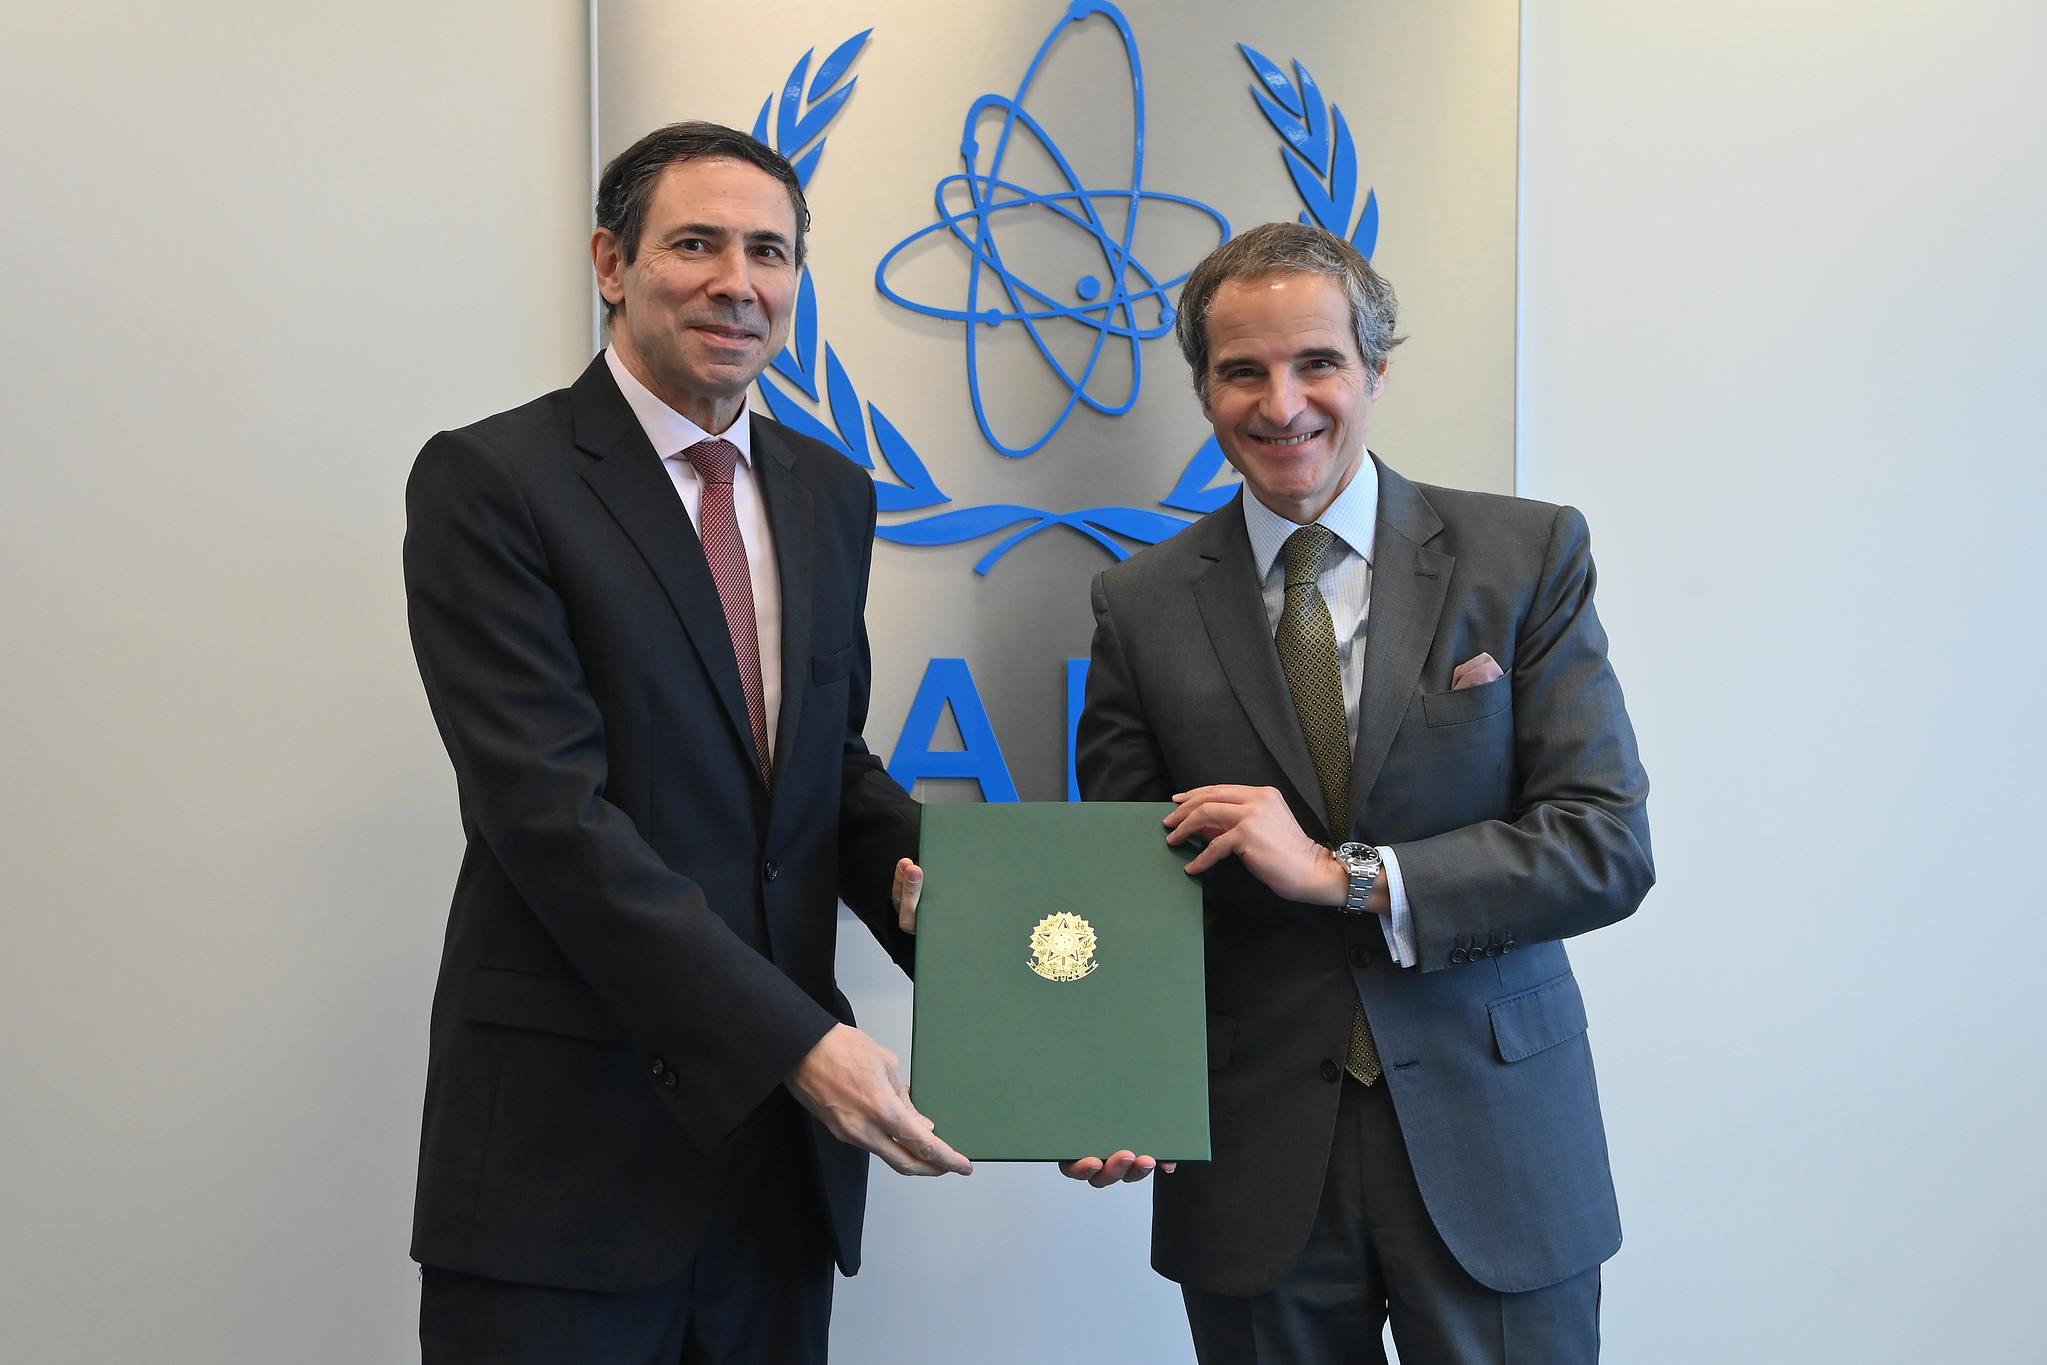 Brasil reforça compromisso com segurança nuclear junto a AIEA